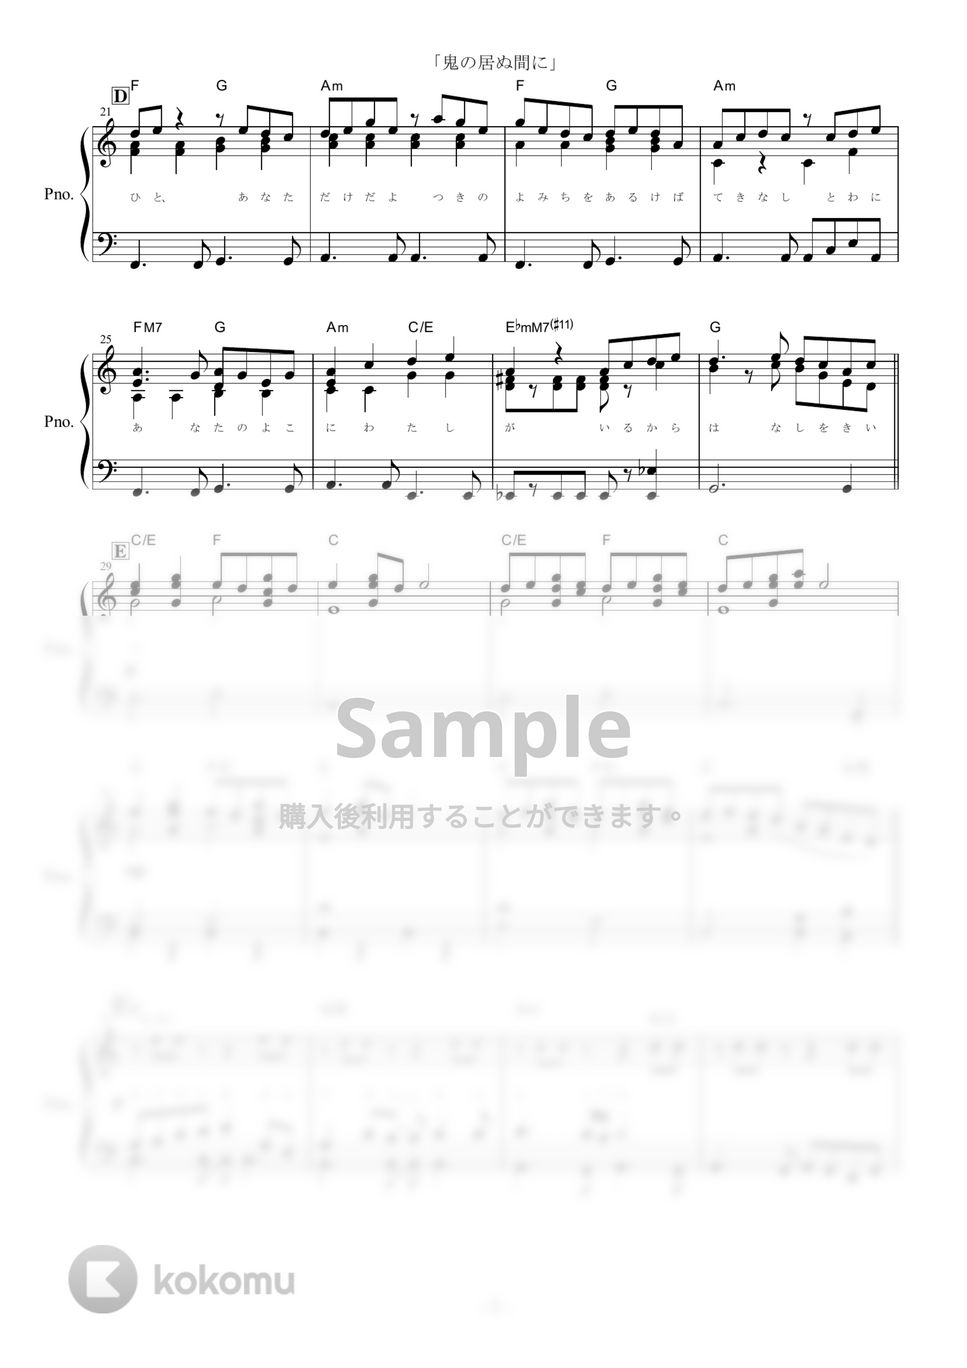 羽生まゐご - 鬼の居ぬ間に (ピアノ楽譜/全５ページ) by yoshi